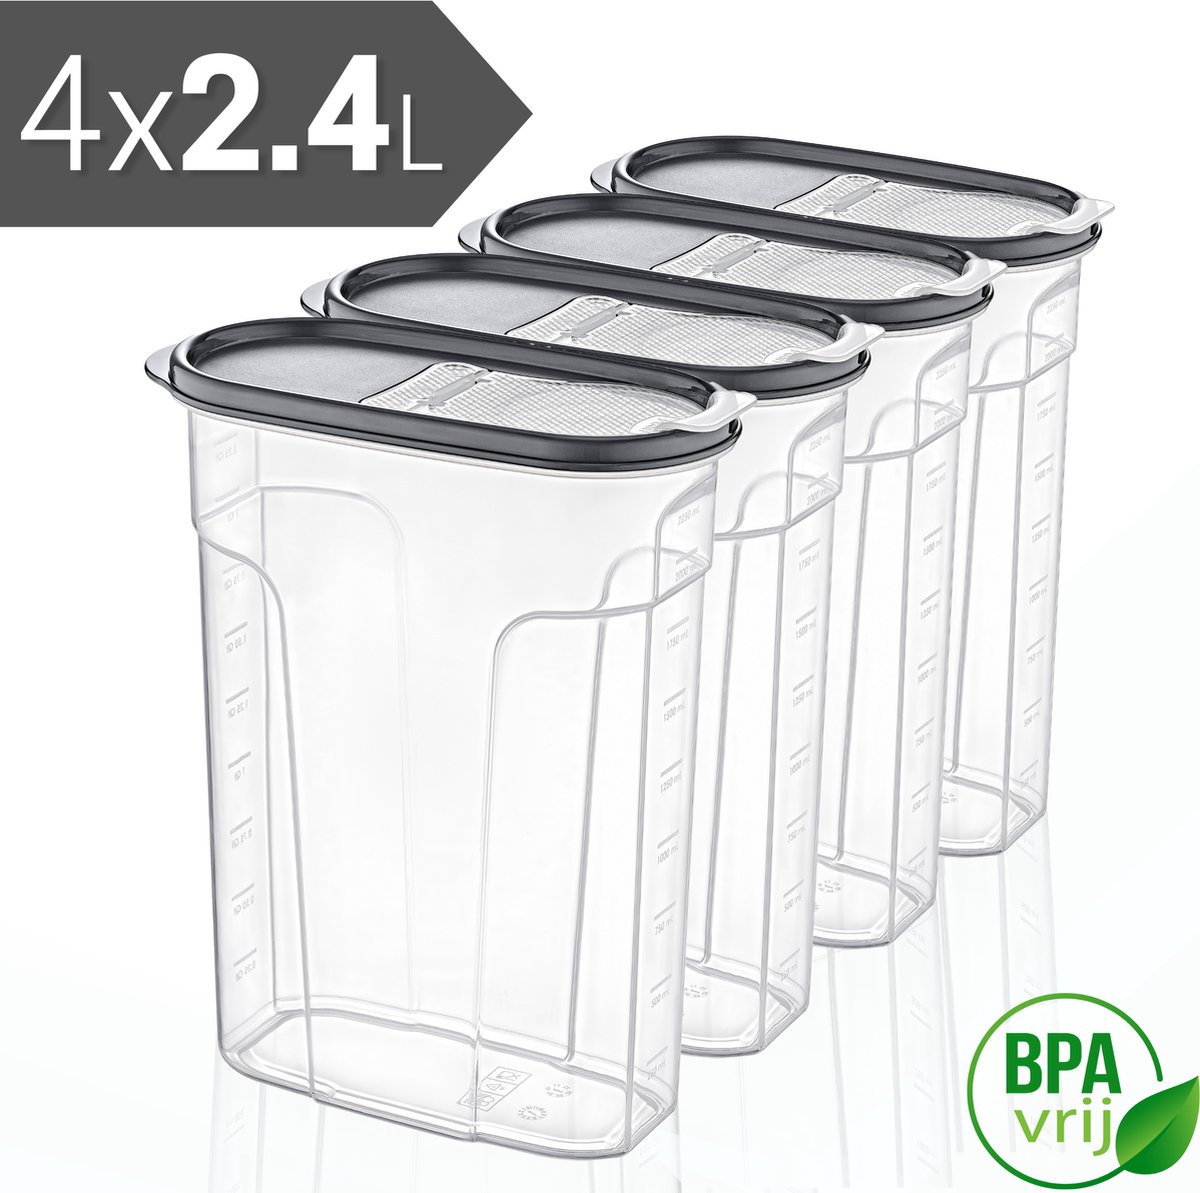 Voorraadpotten Set van 4 - 4x2.4L met grijze deksel Voorraadbussen - Vershouddoos - 4 Stuks - BPA vrij - Kunststof